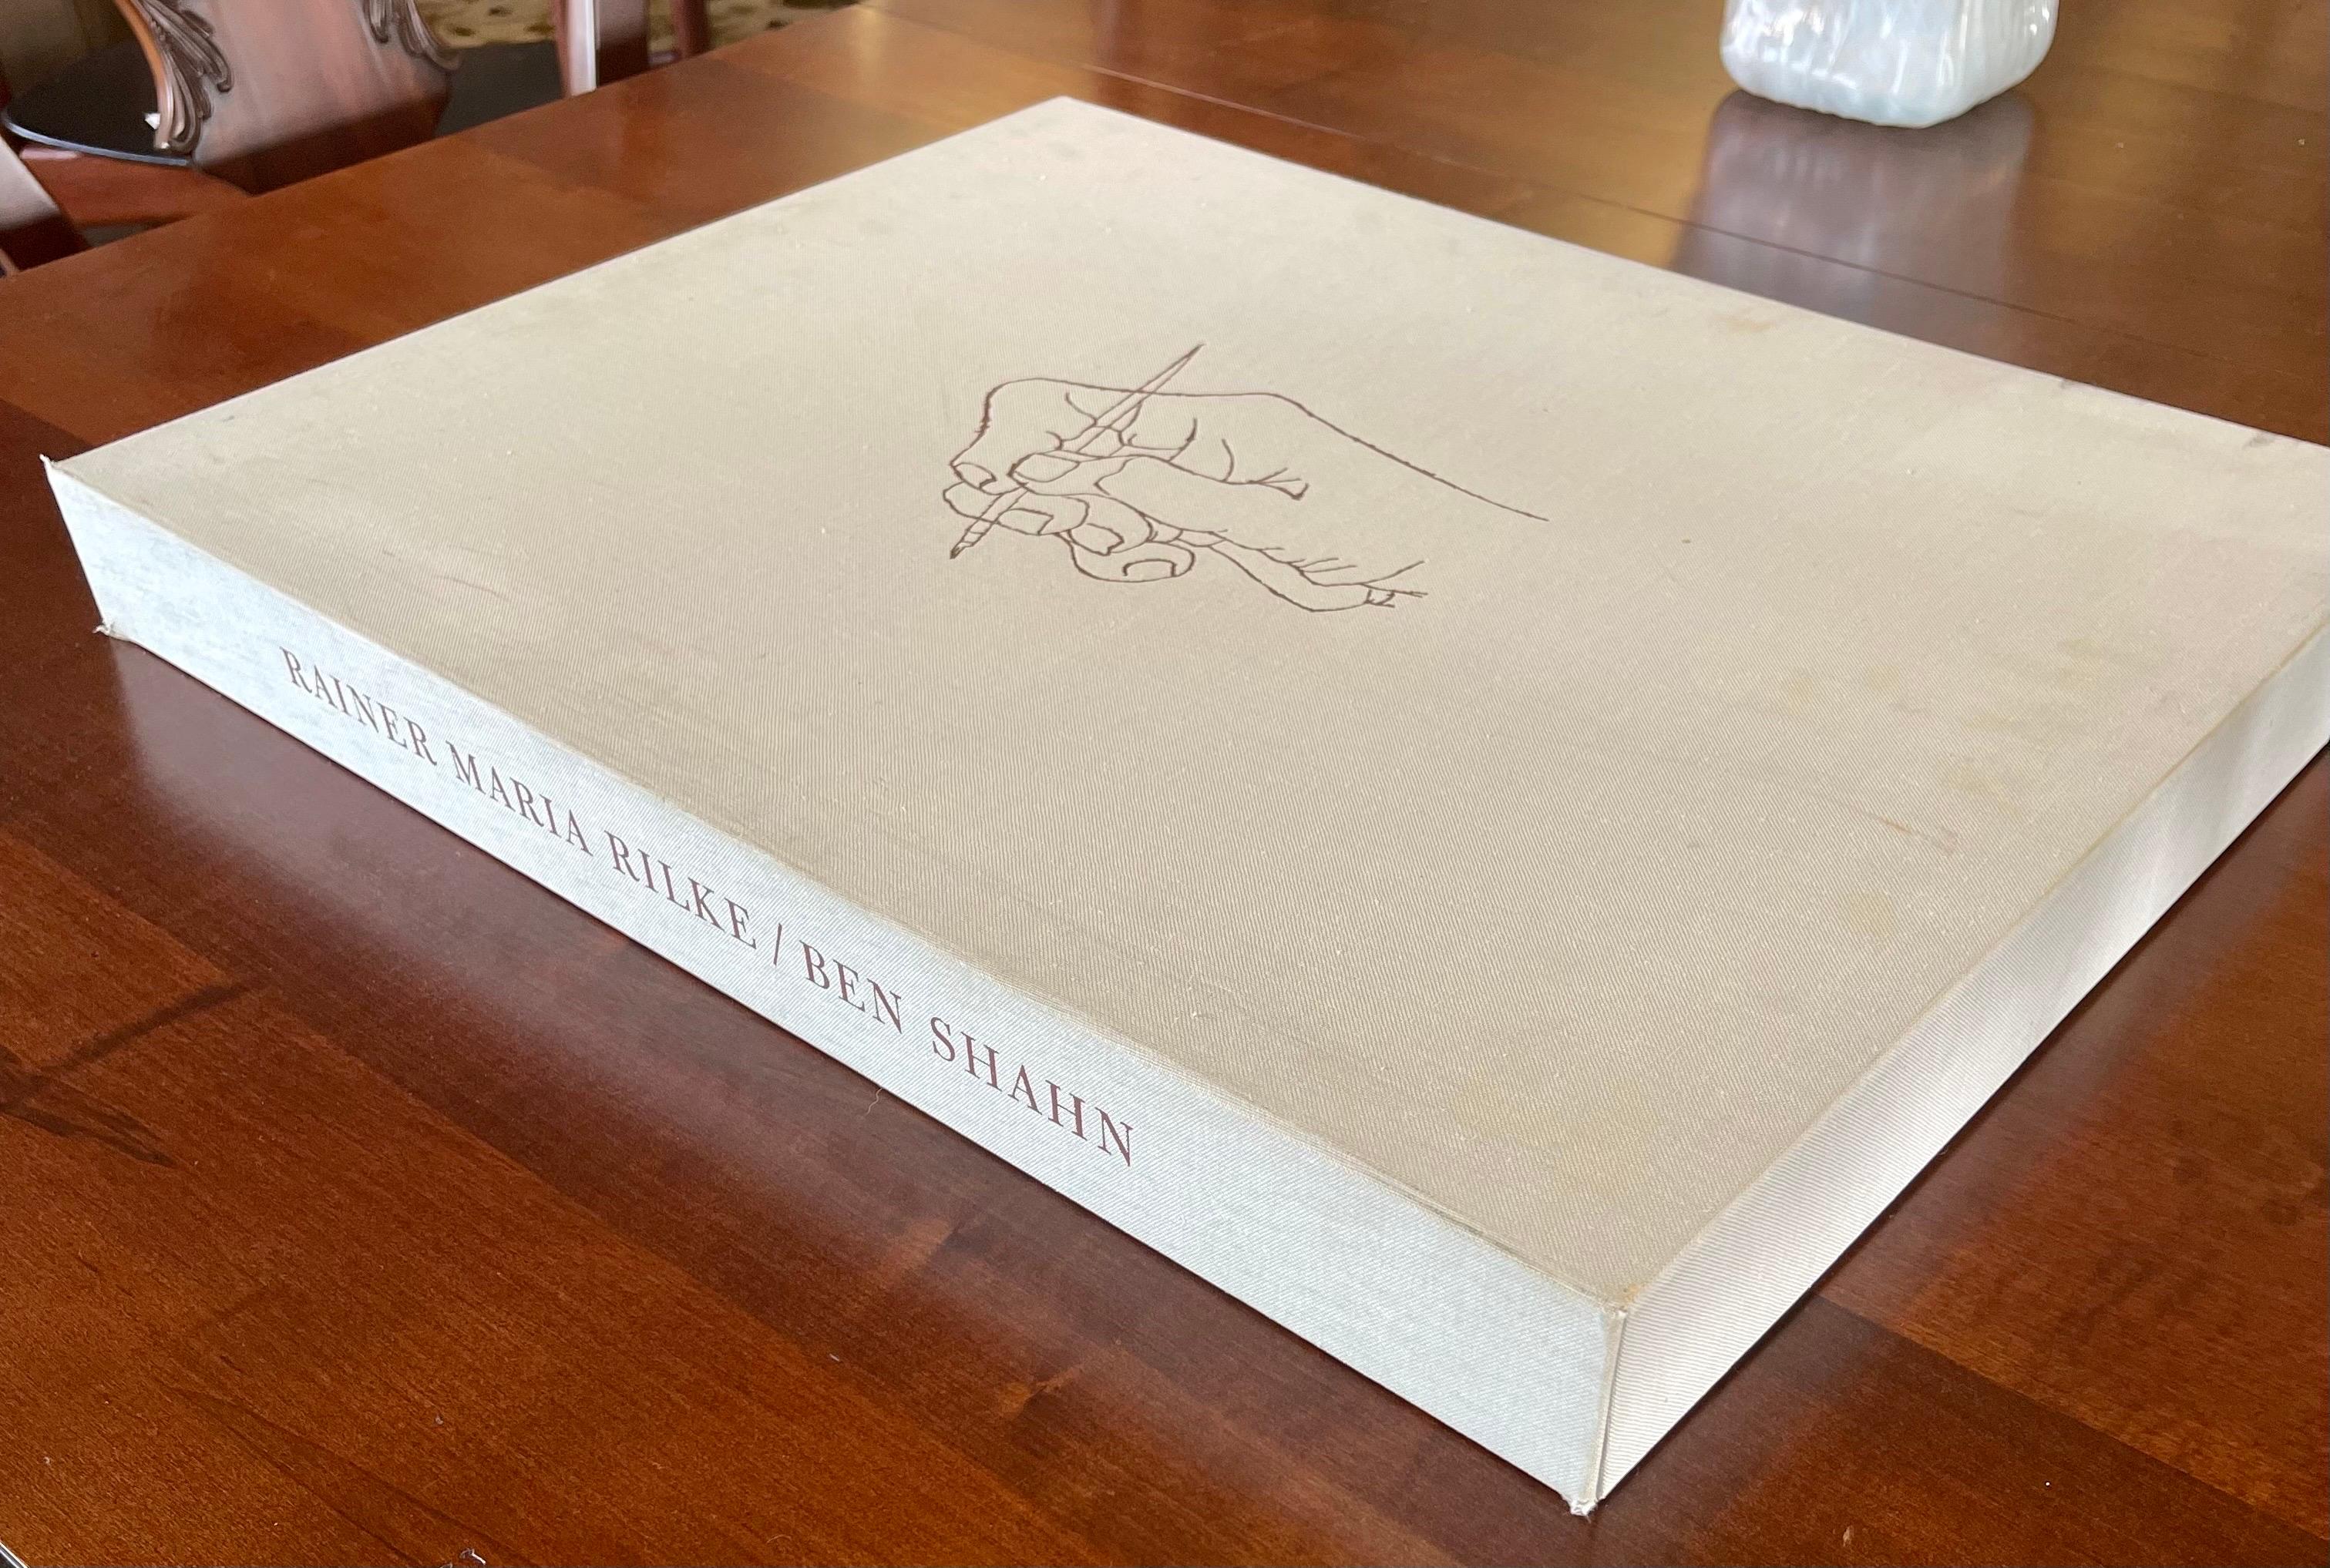 Américain Ben Shahn portfolio très convoité en édition limitée #234 avec 24 lithographies de R. M. Rilke en vente